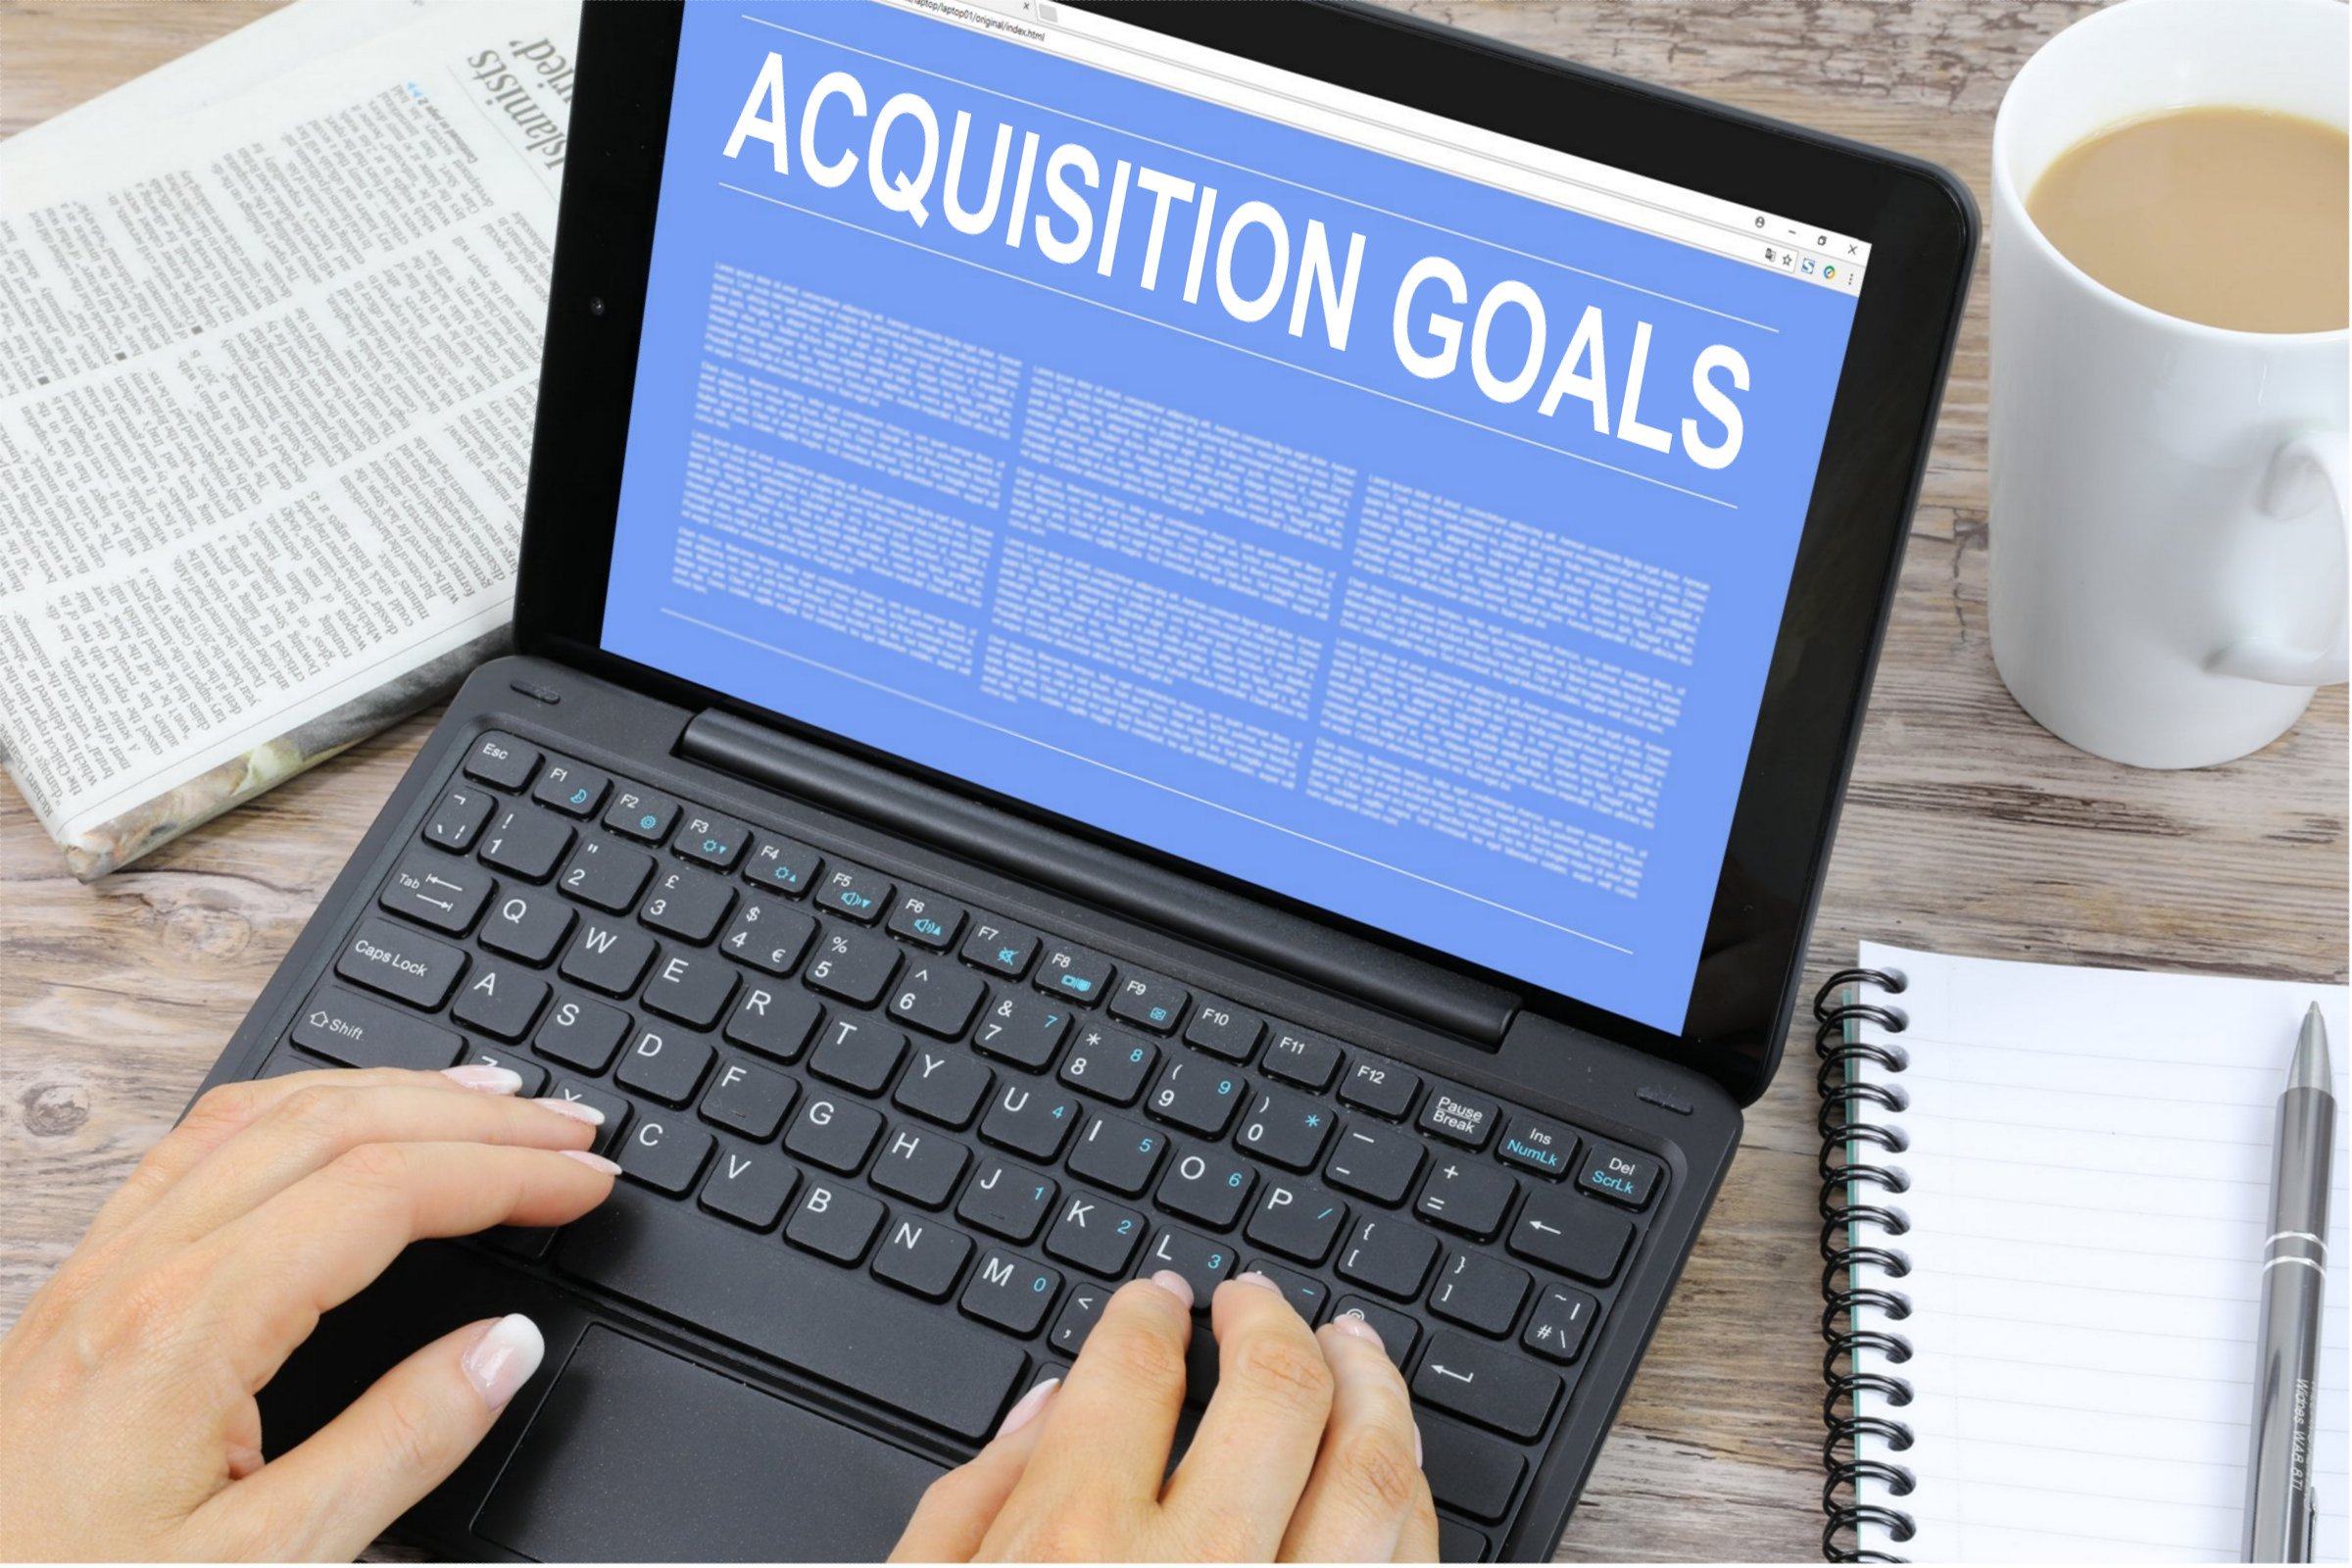 acquisition goals